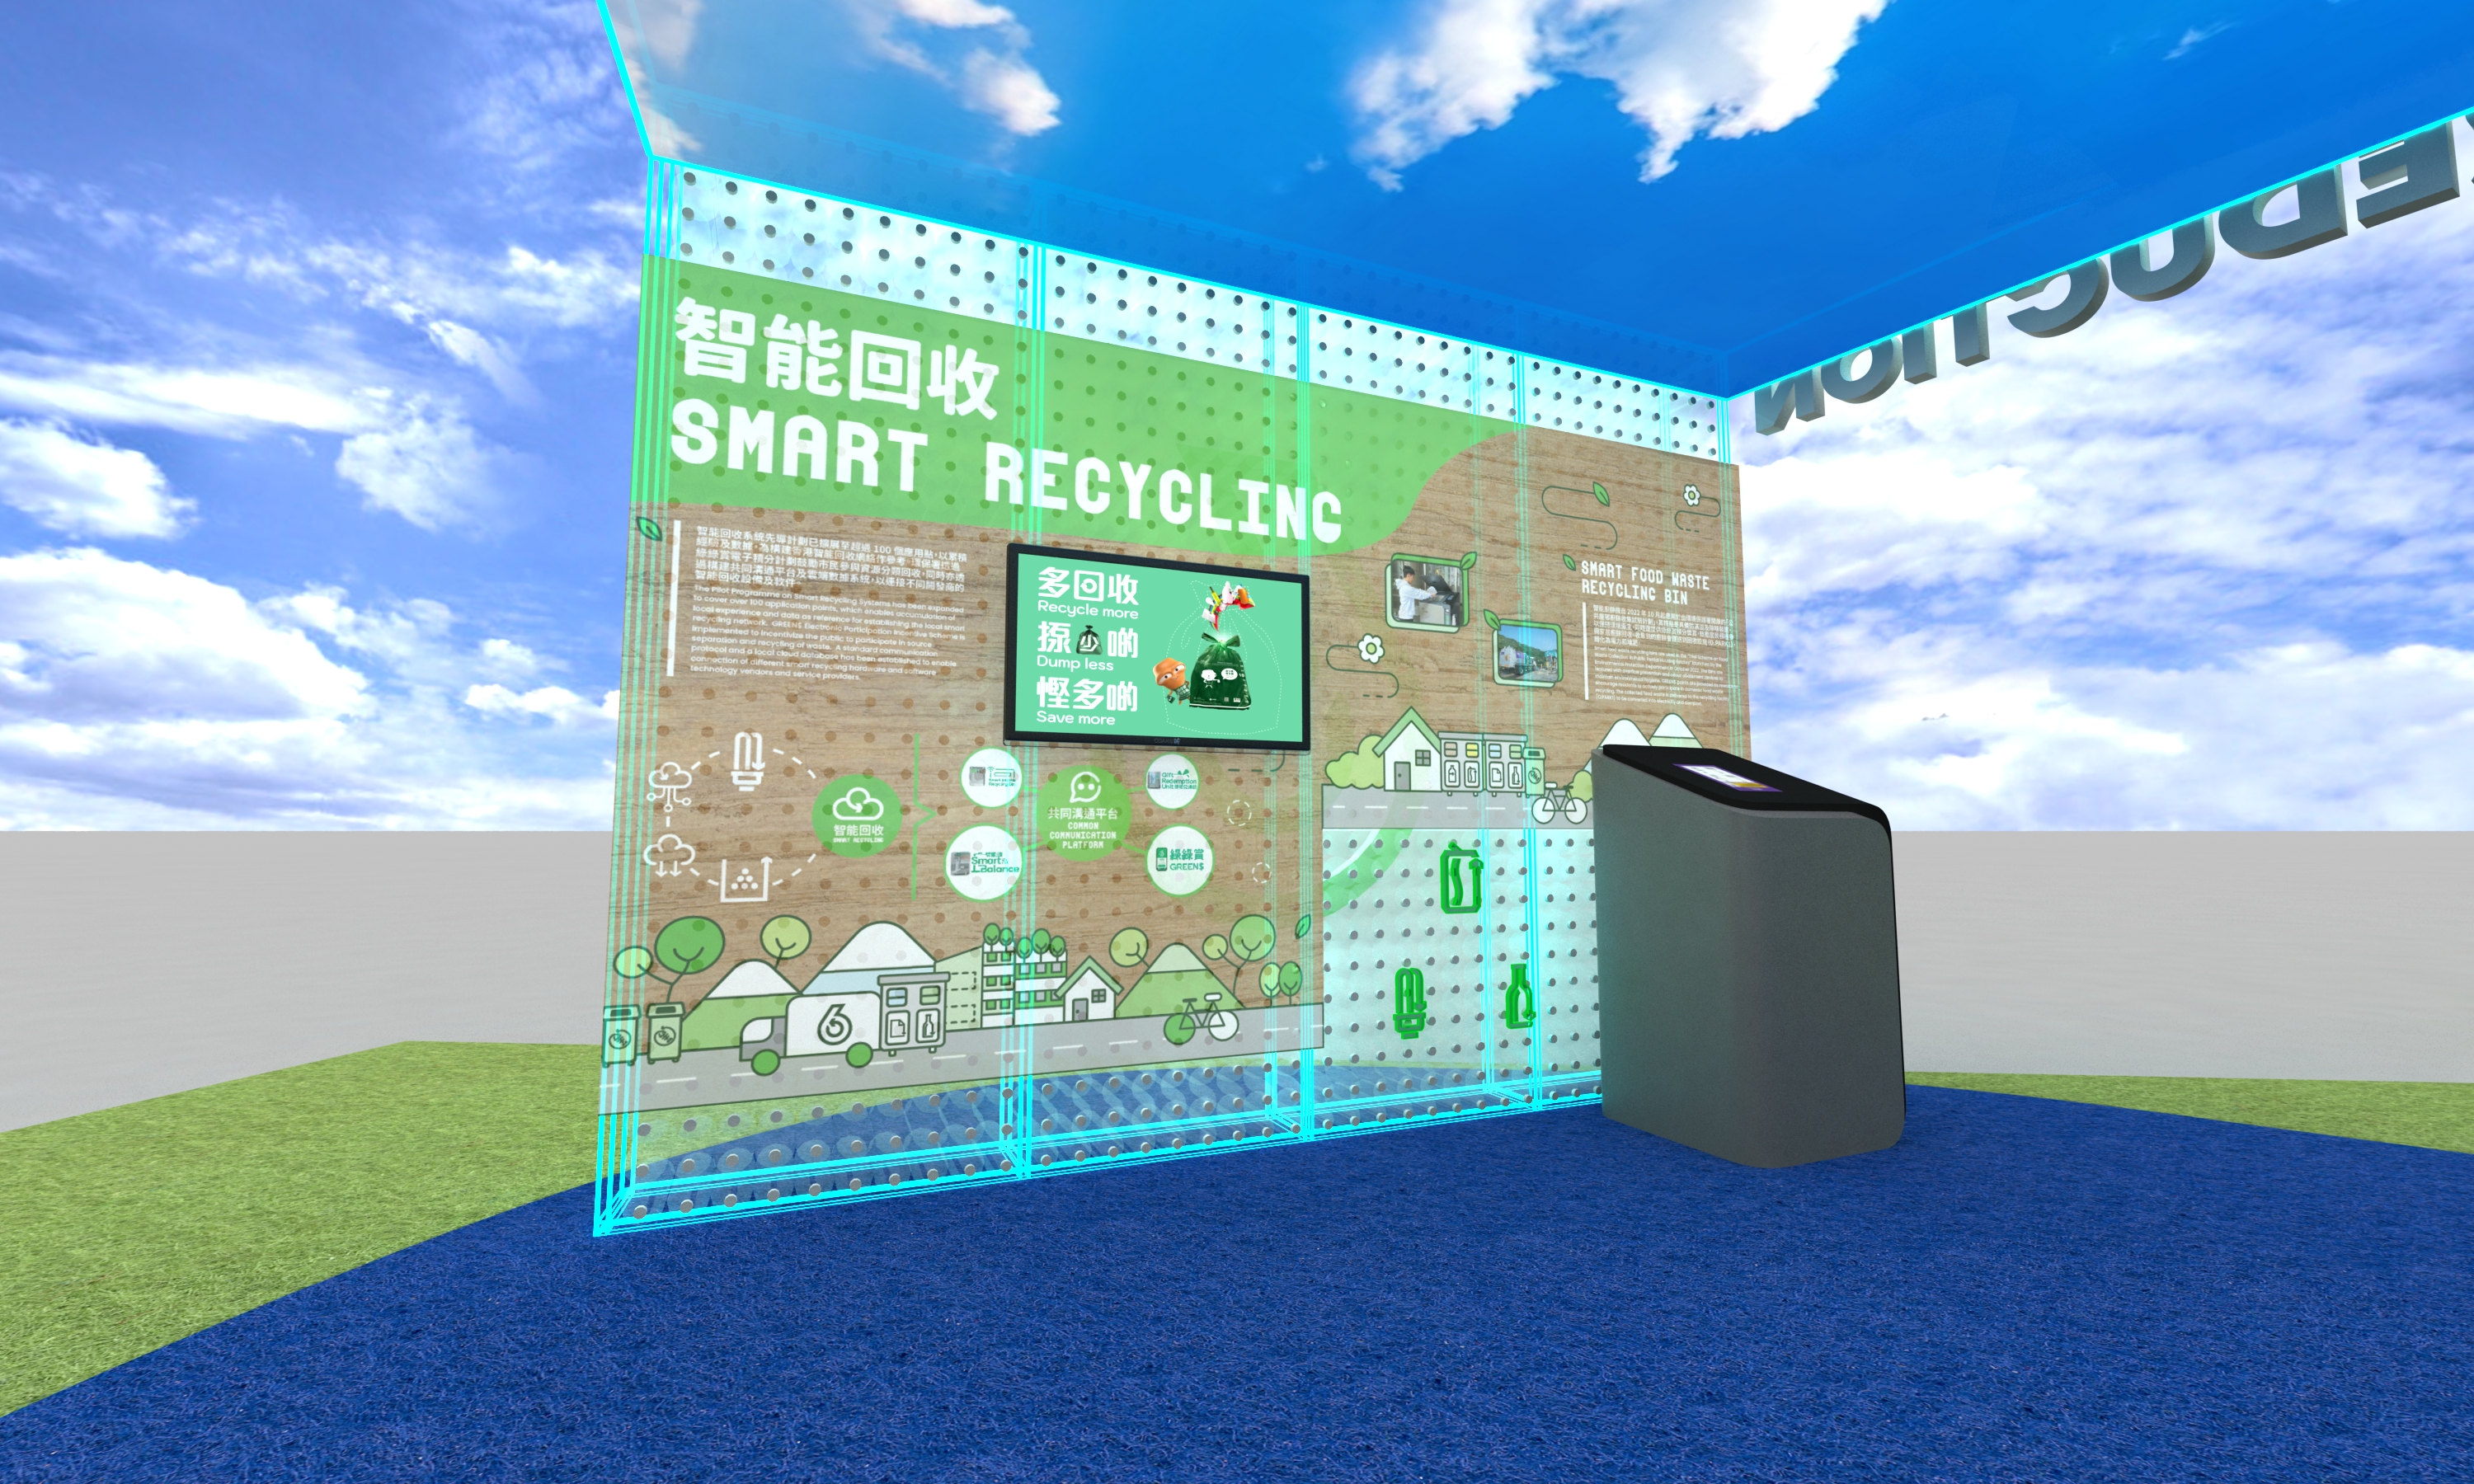 Smart Recycling & Smart Food Waste Recycling Bin